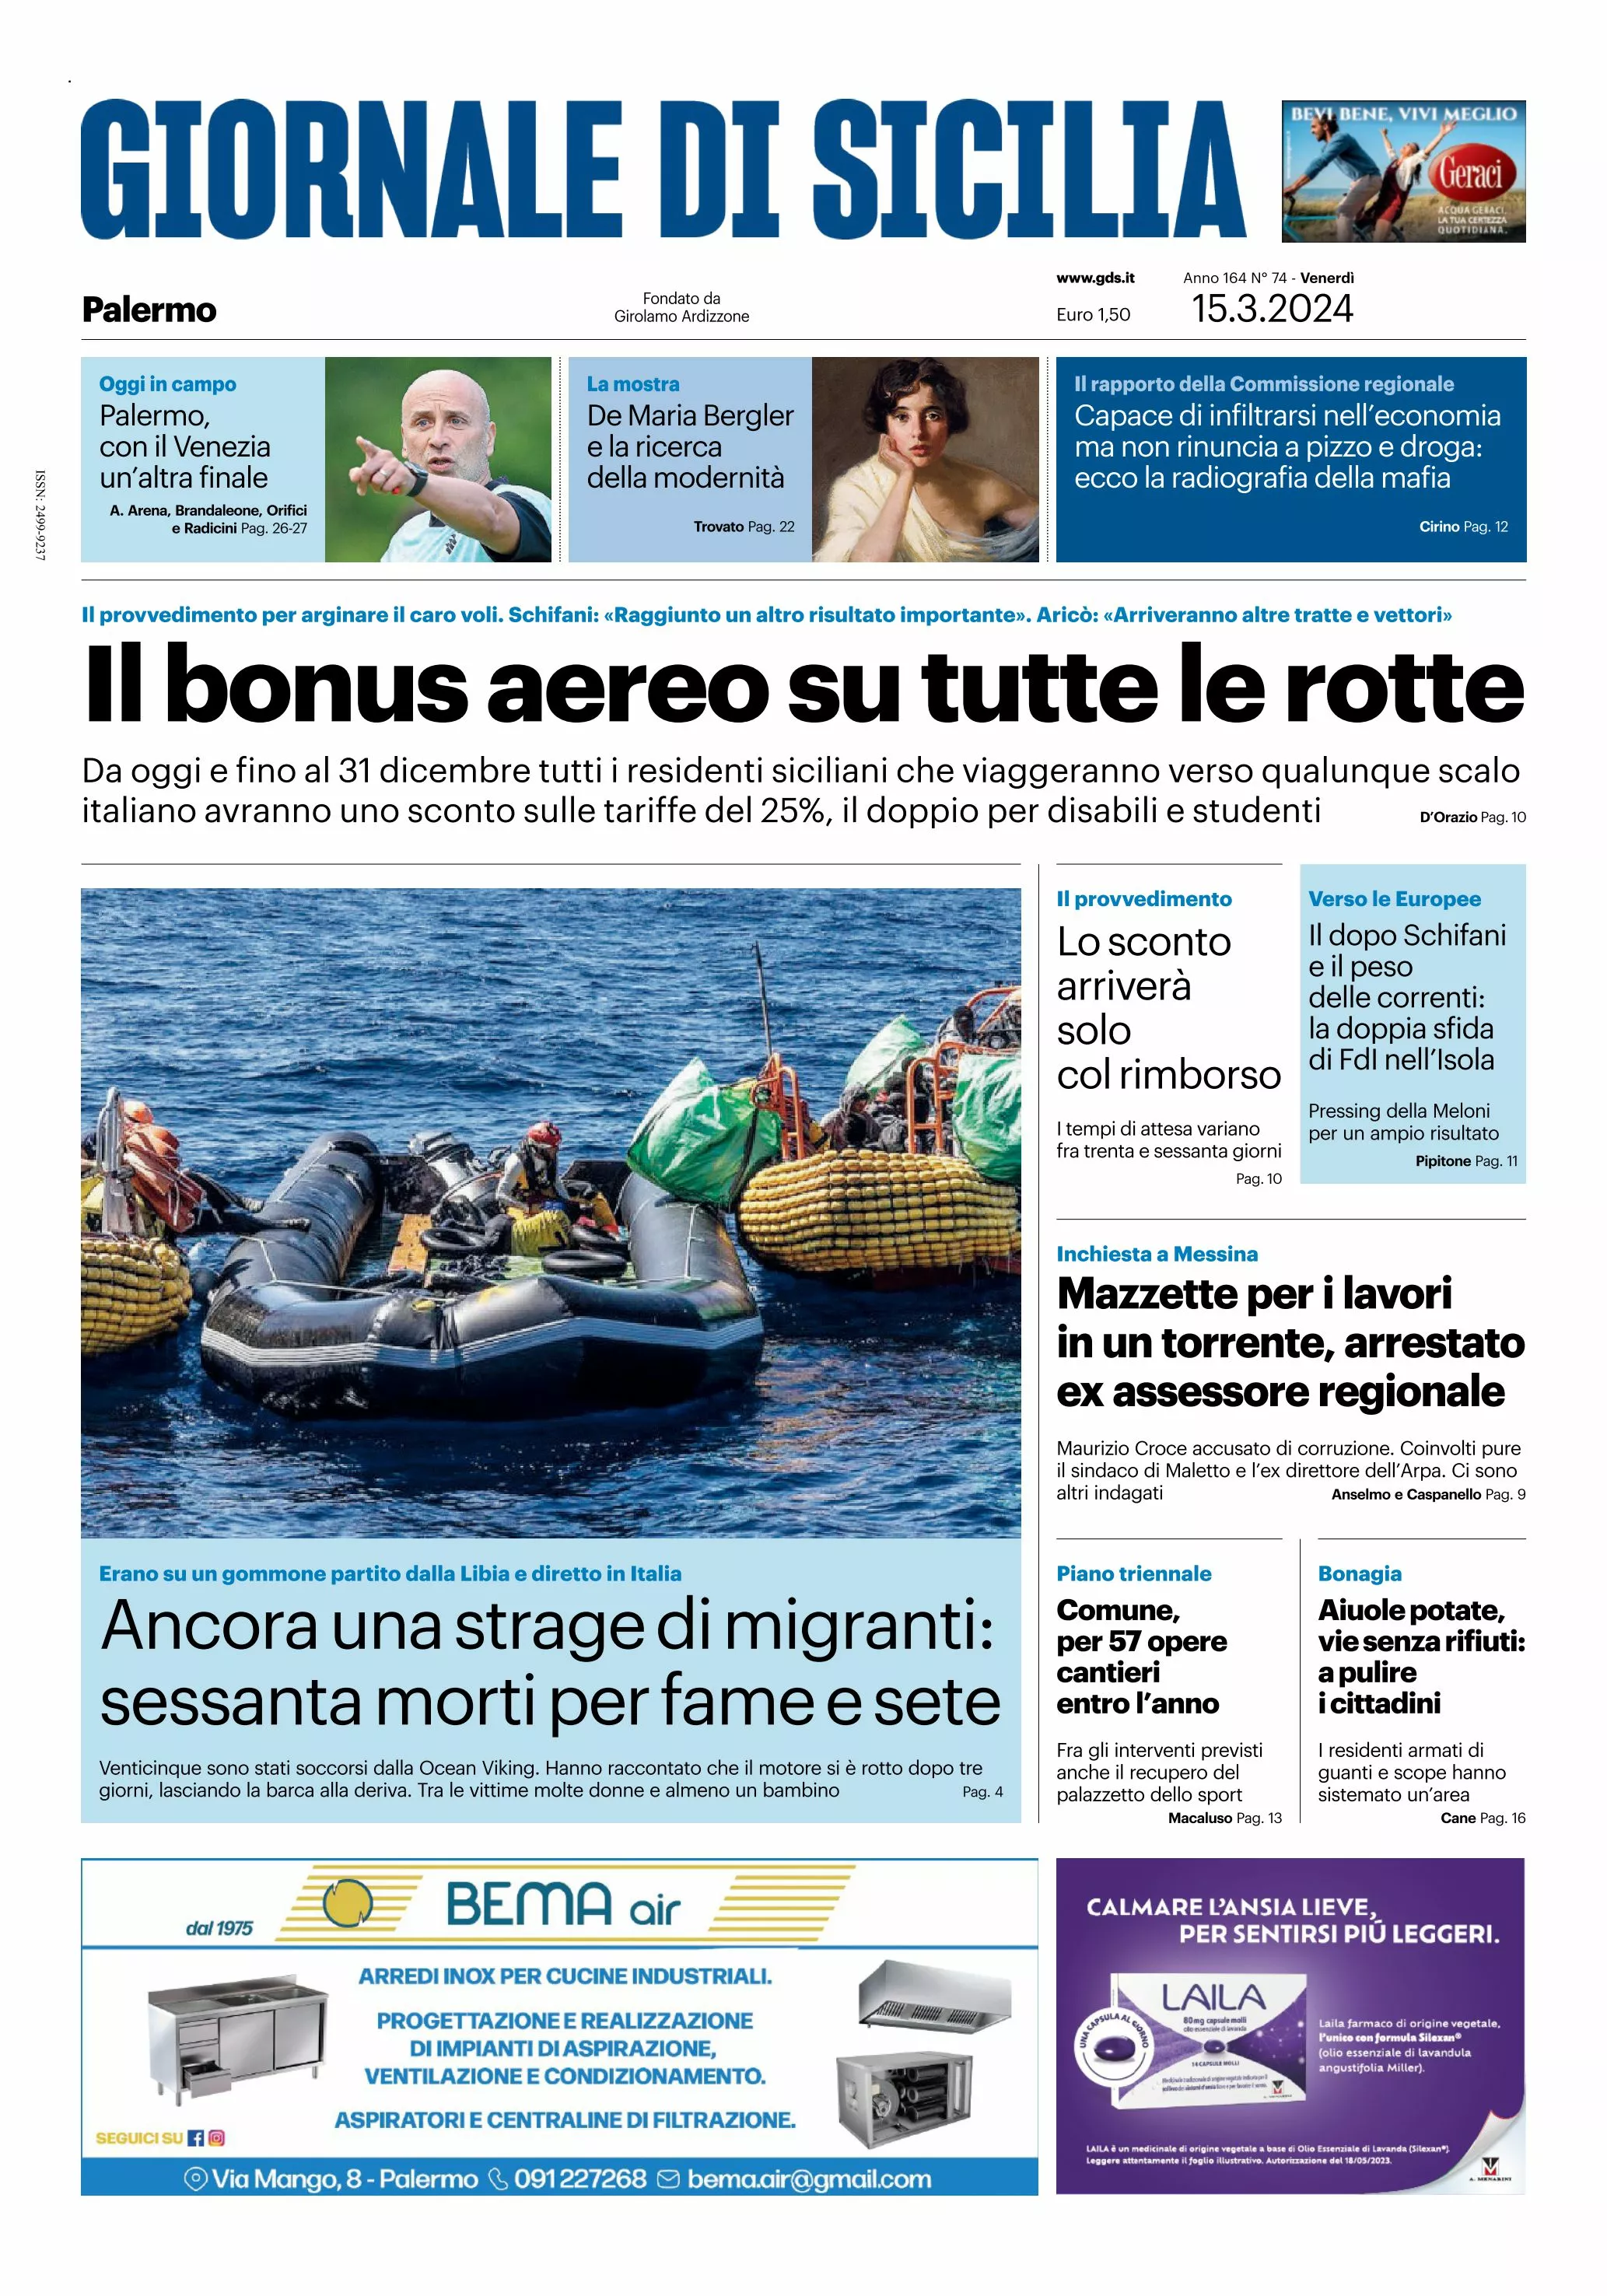 Prima-pagina-giornale-di-sicilia-edizione-palermo-di-oggi-15-03-24